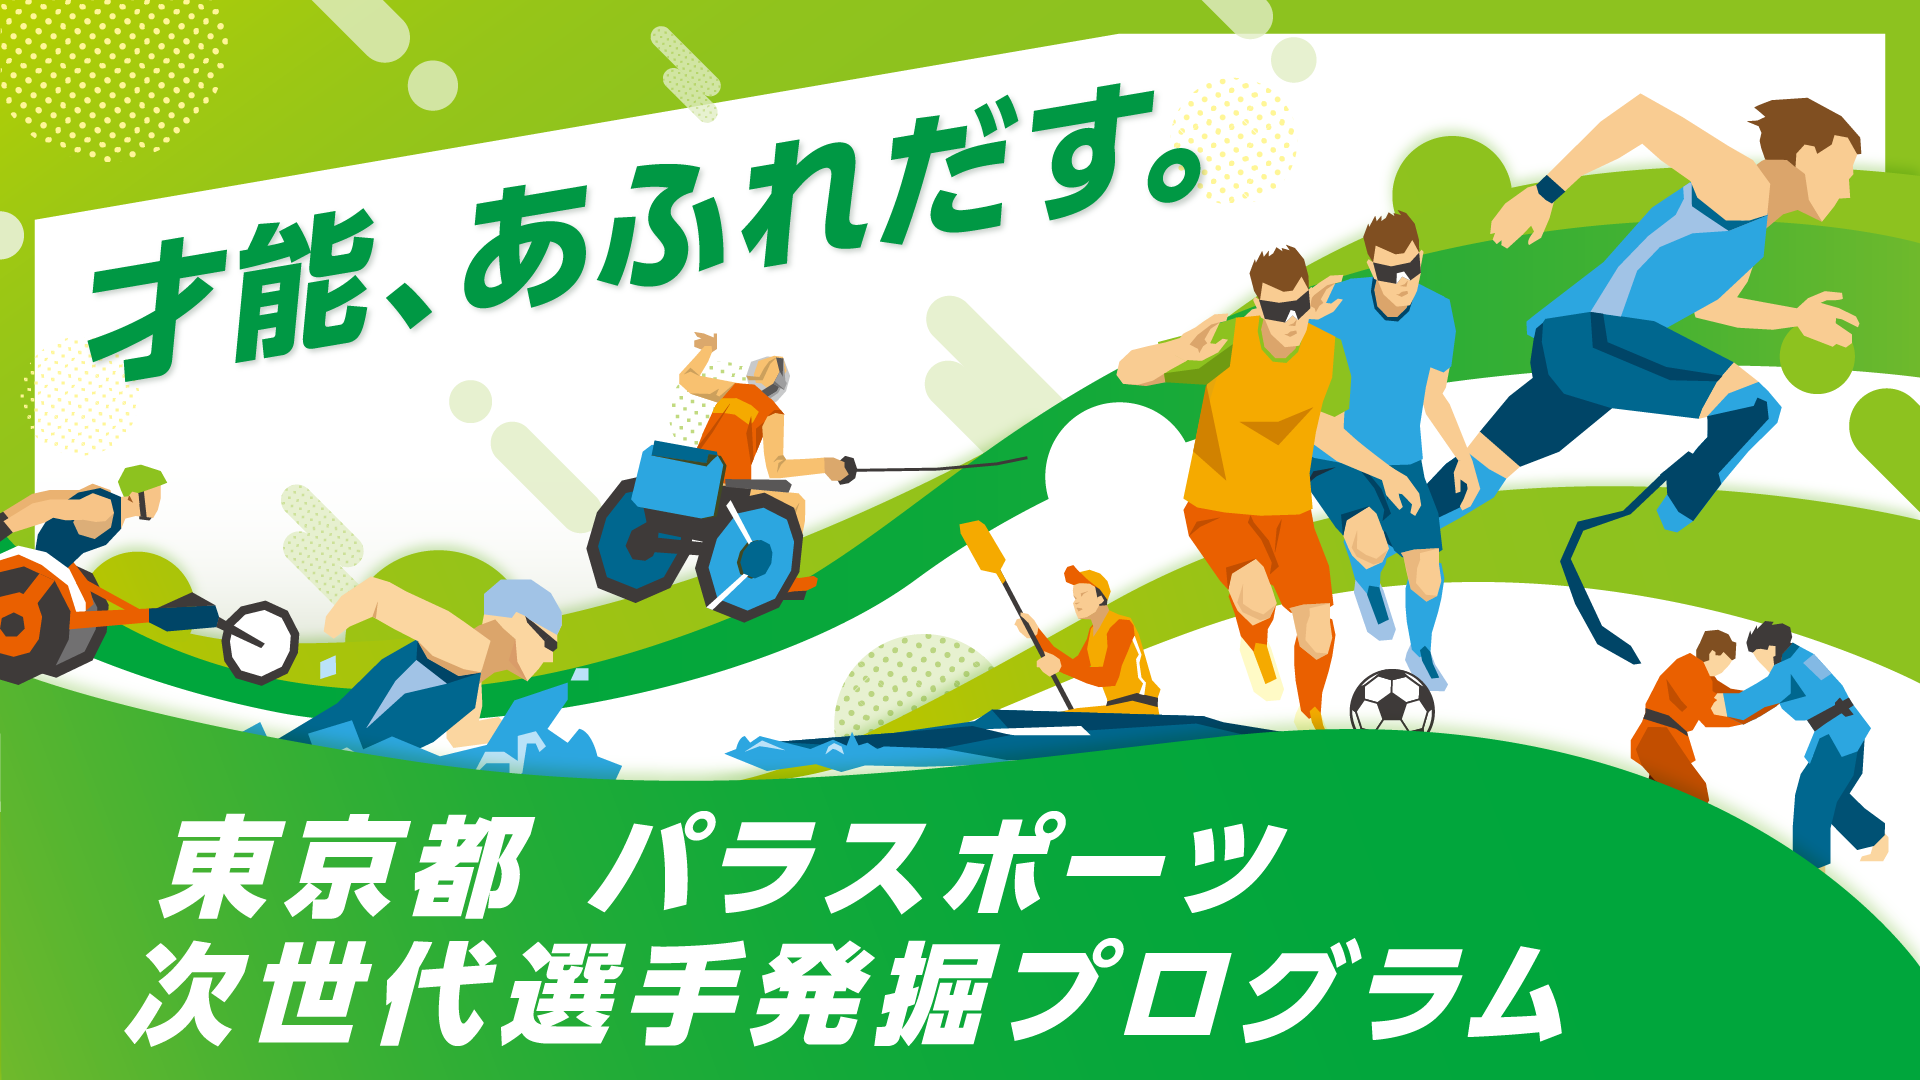 parasports 16 9 - 東京都パラスポーツ次世代選手発掘プログラム（第2回）参加者募集について